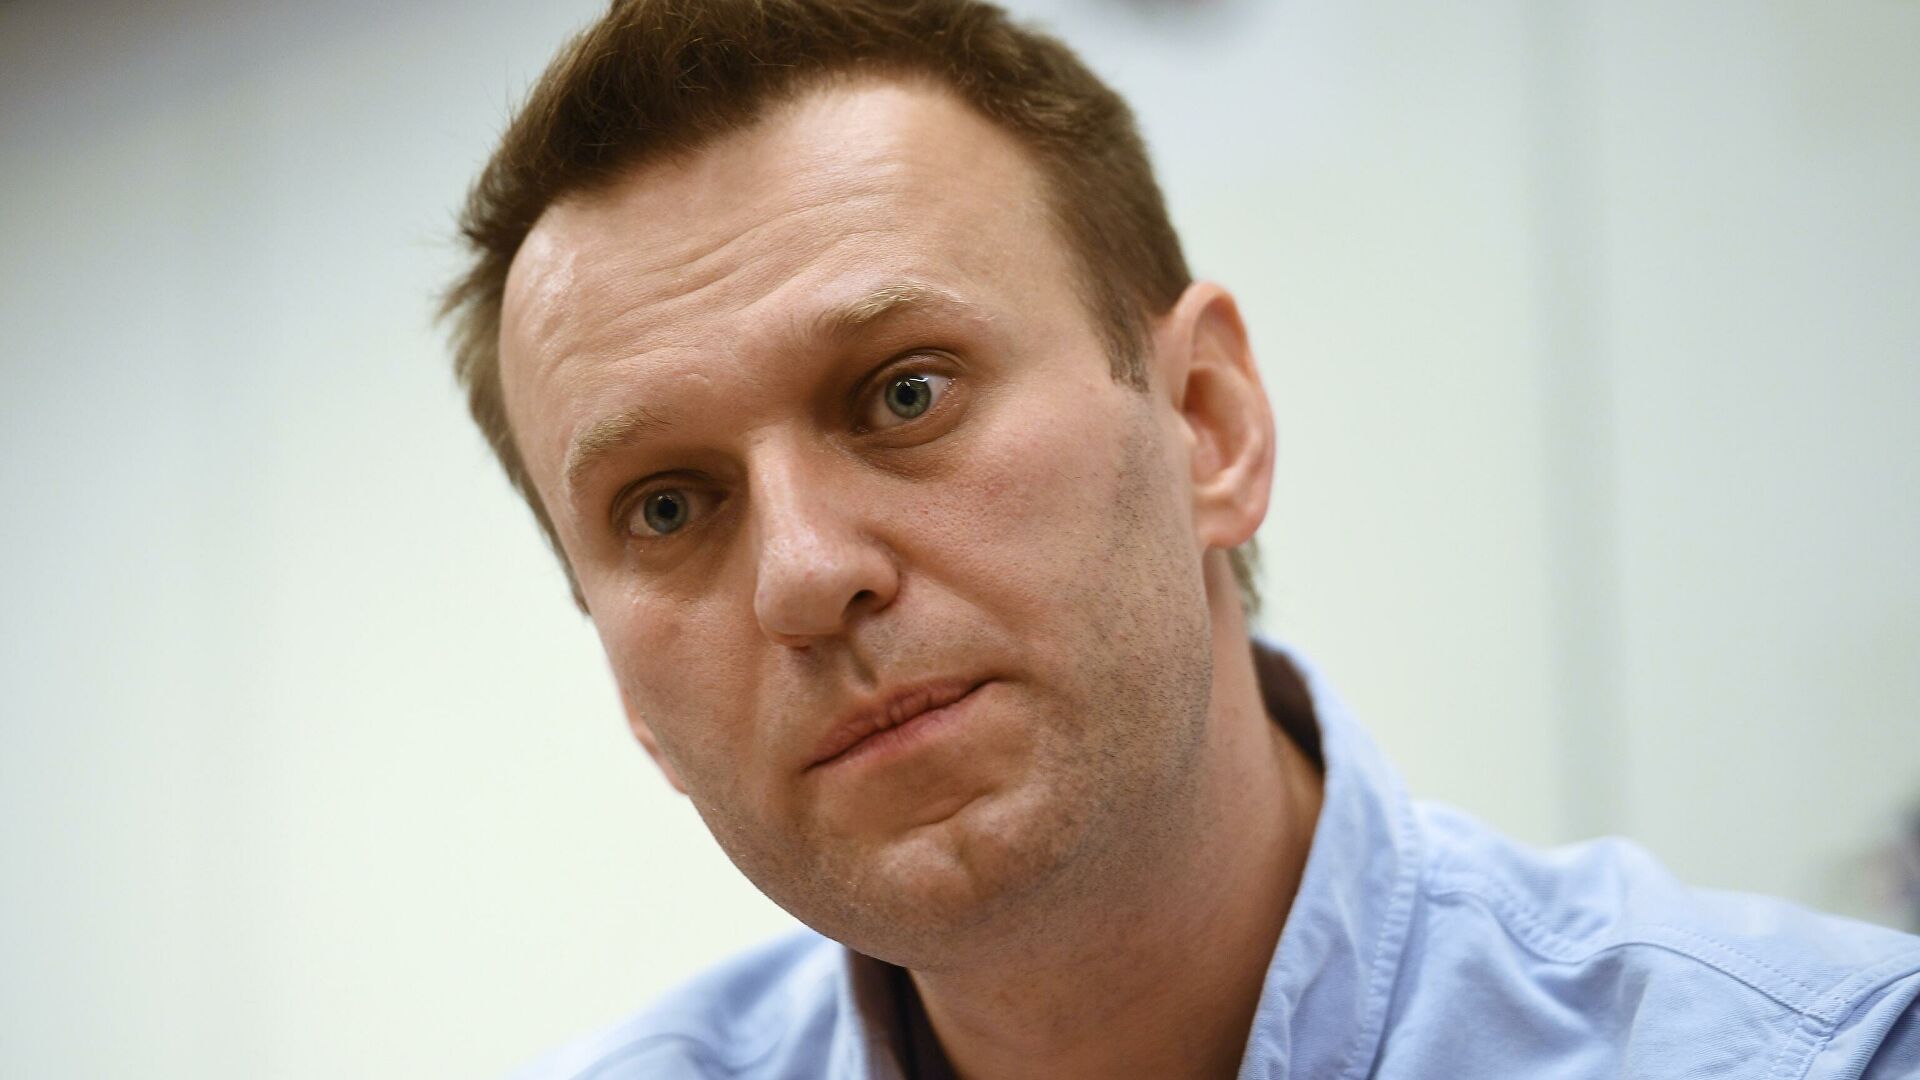 Россия задала Евросоюзу девять вопросов о Навальном